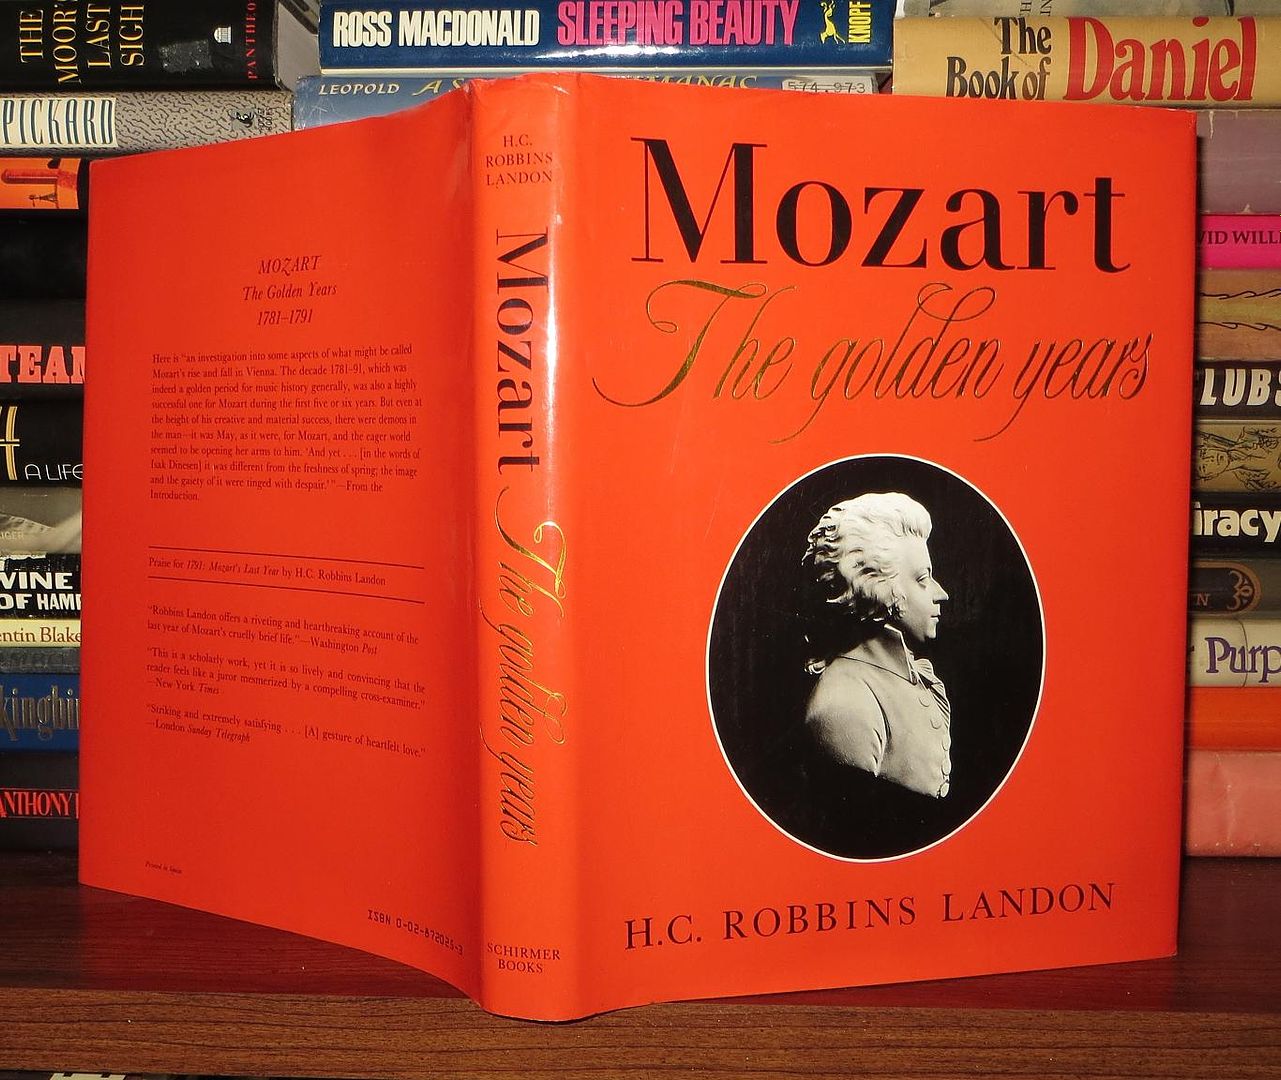 LANDON, H. C. ROBBINS - MOZART - Mozart the Golden Years 1781-1791